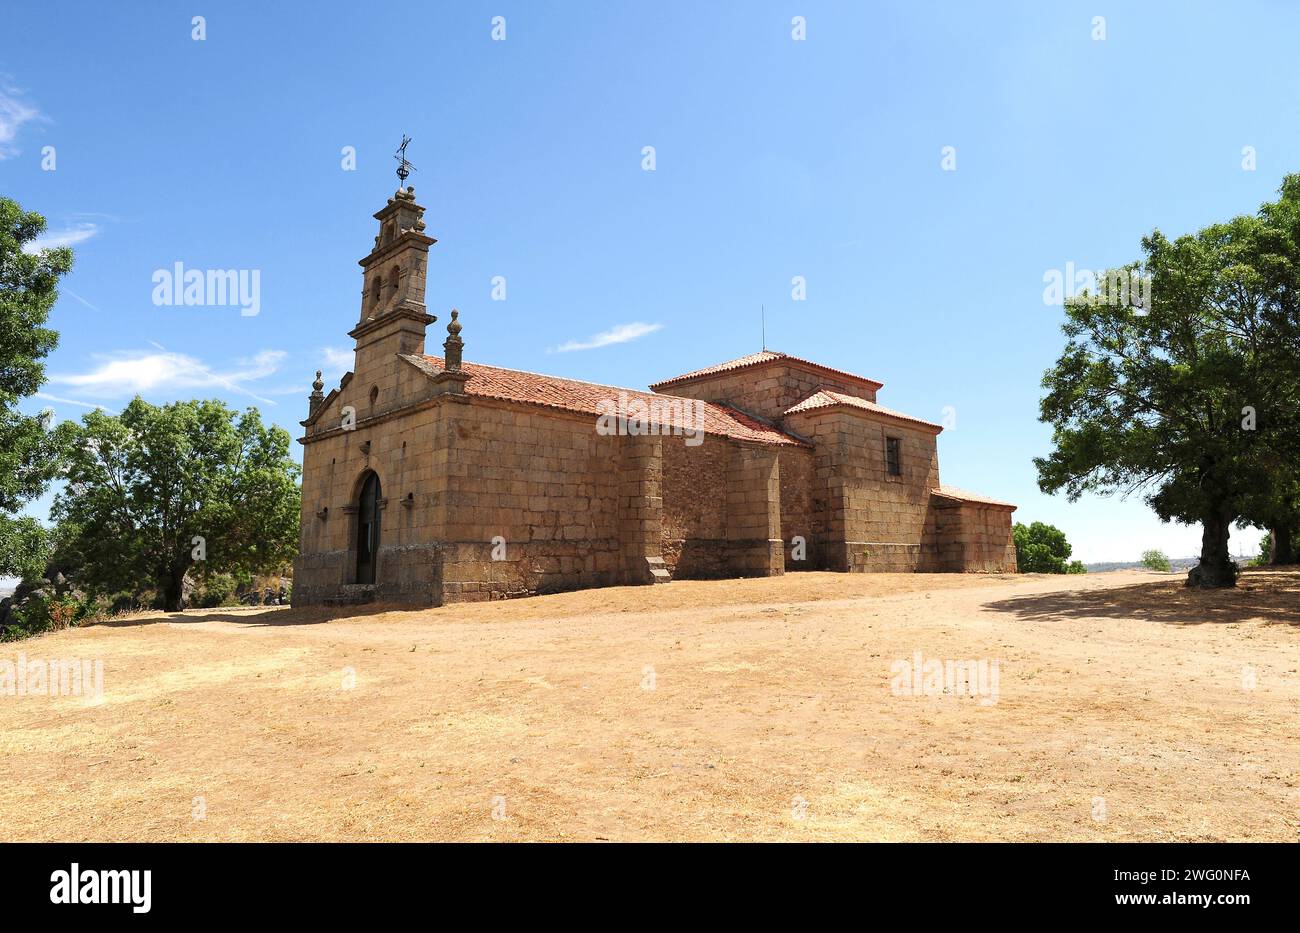 Pereña de la Ribera, Ermita de la Virgen del Castillo. Salamanca province, Castilla y Leon, Spain. Stock Photo